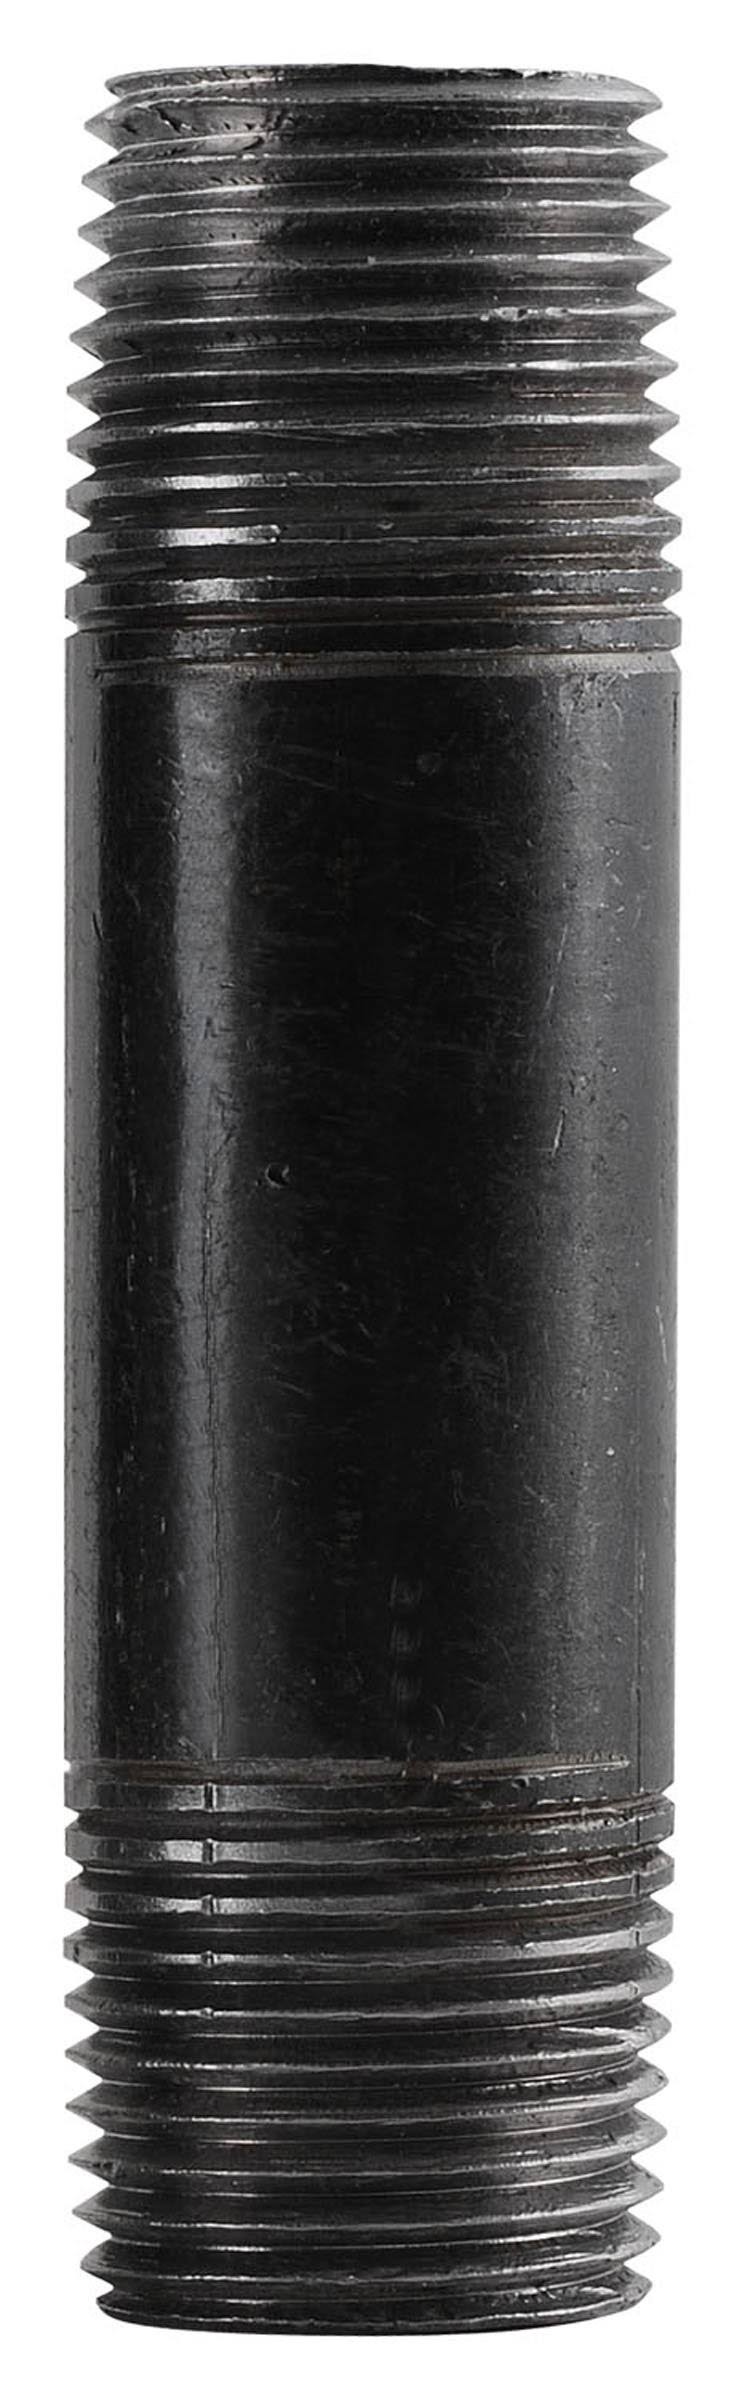 LDR 300 Black Steel Pipe Nipple - 1 1/4" x 6"